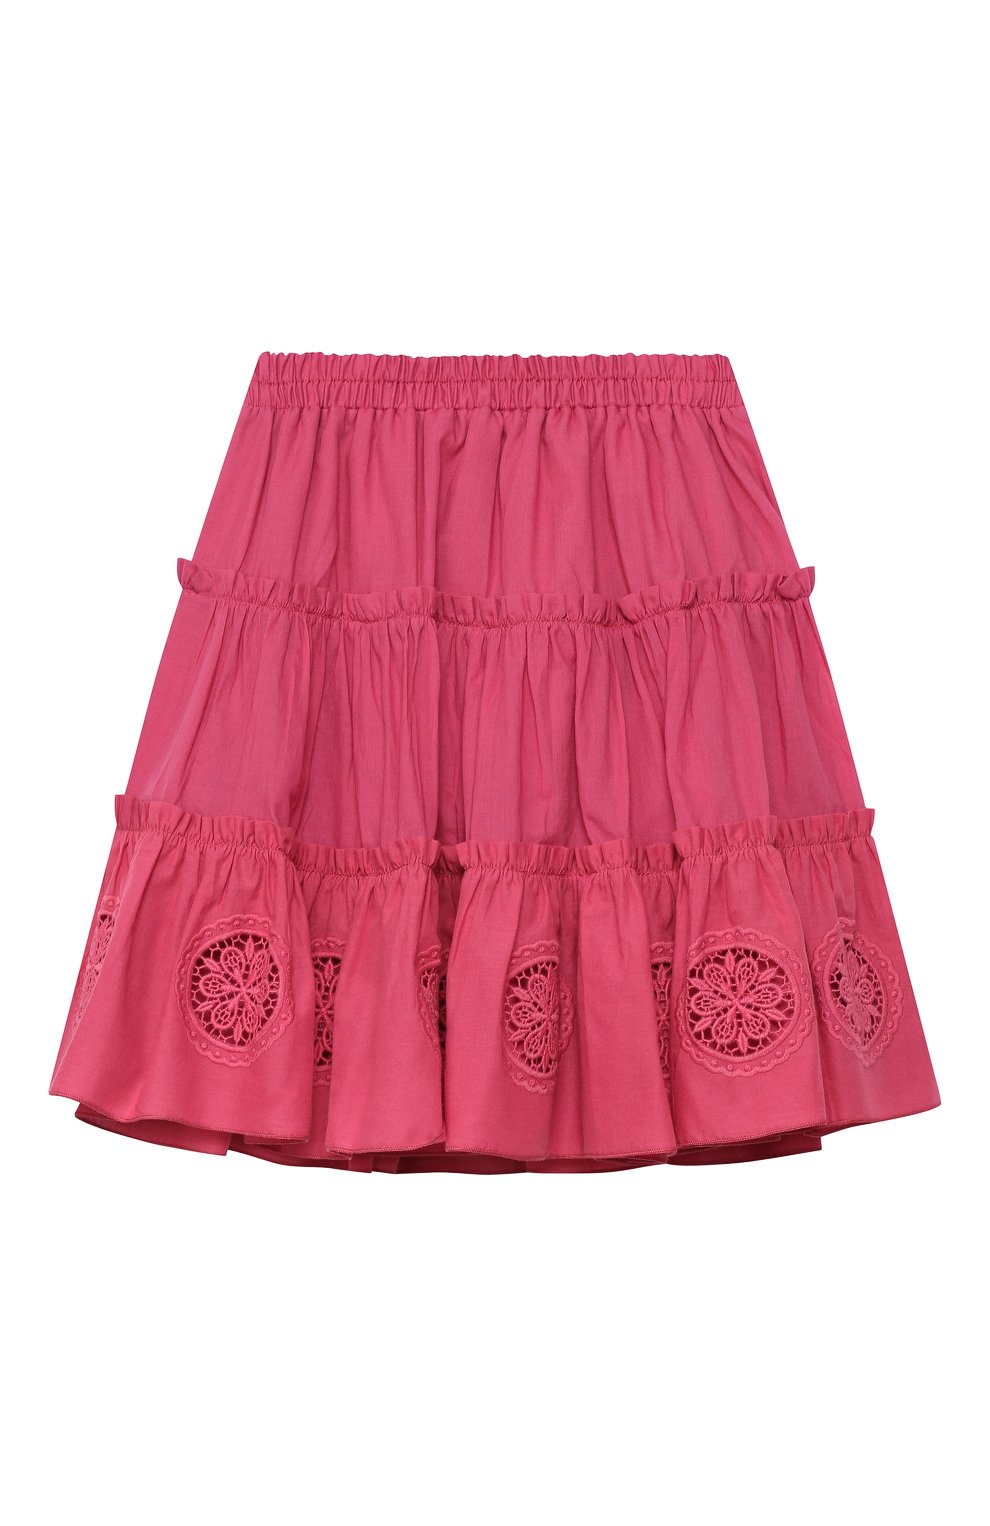 Детская хлопковая юбка CHARO RUIZ IBIZA фуксия цвета, арт. 9941 | Фото 1 (Случай: Повседневный; Материал внешний: Хлопок; Материал подклада: Хлопок)